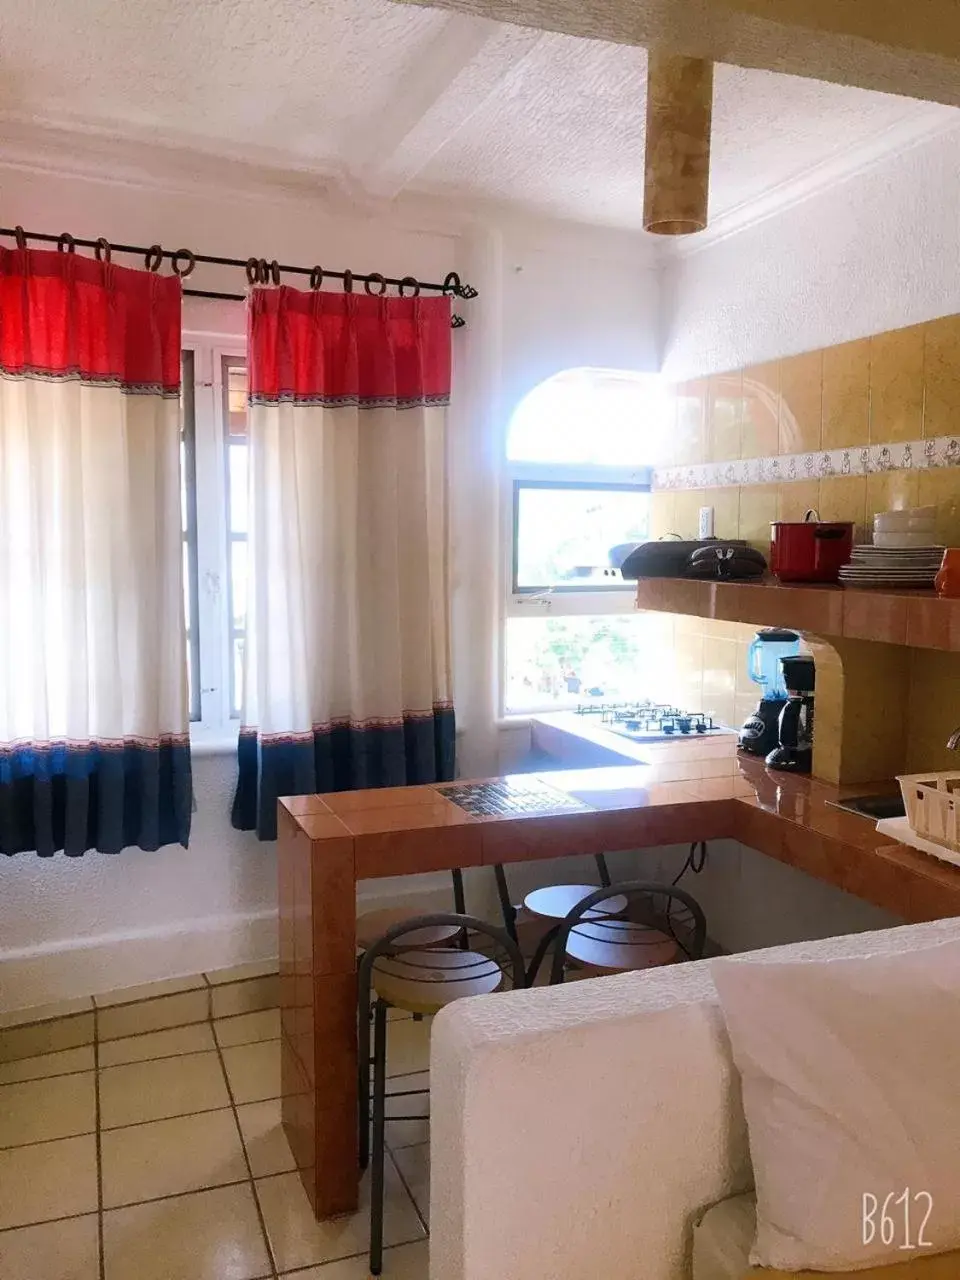 Dining area in Hotel Careyes Puerto Escondido